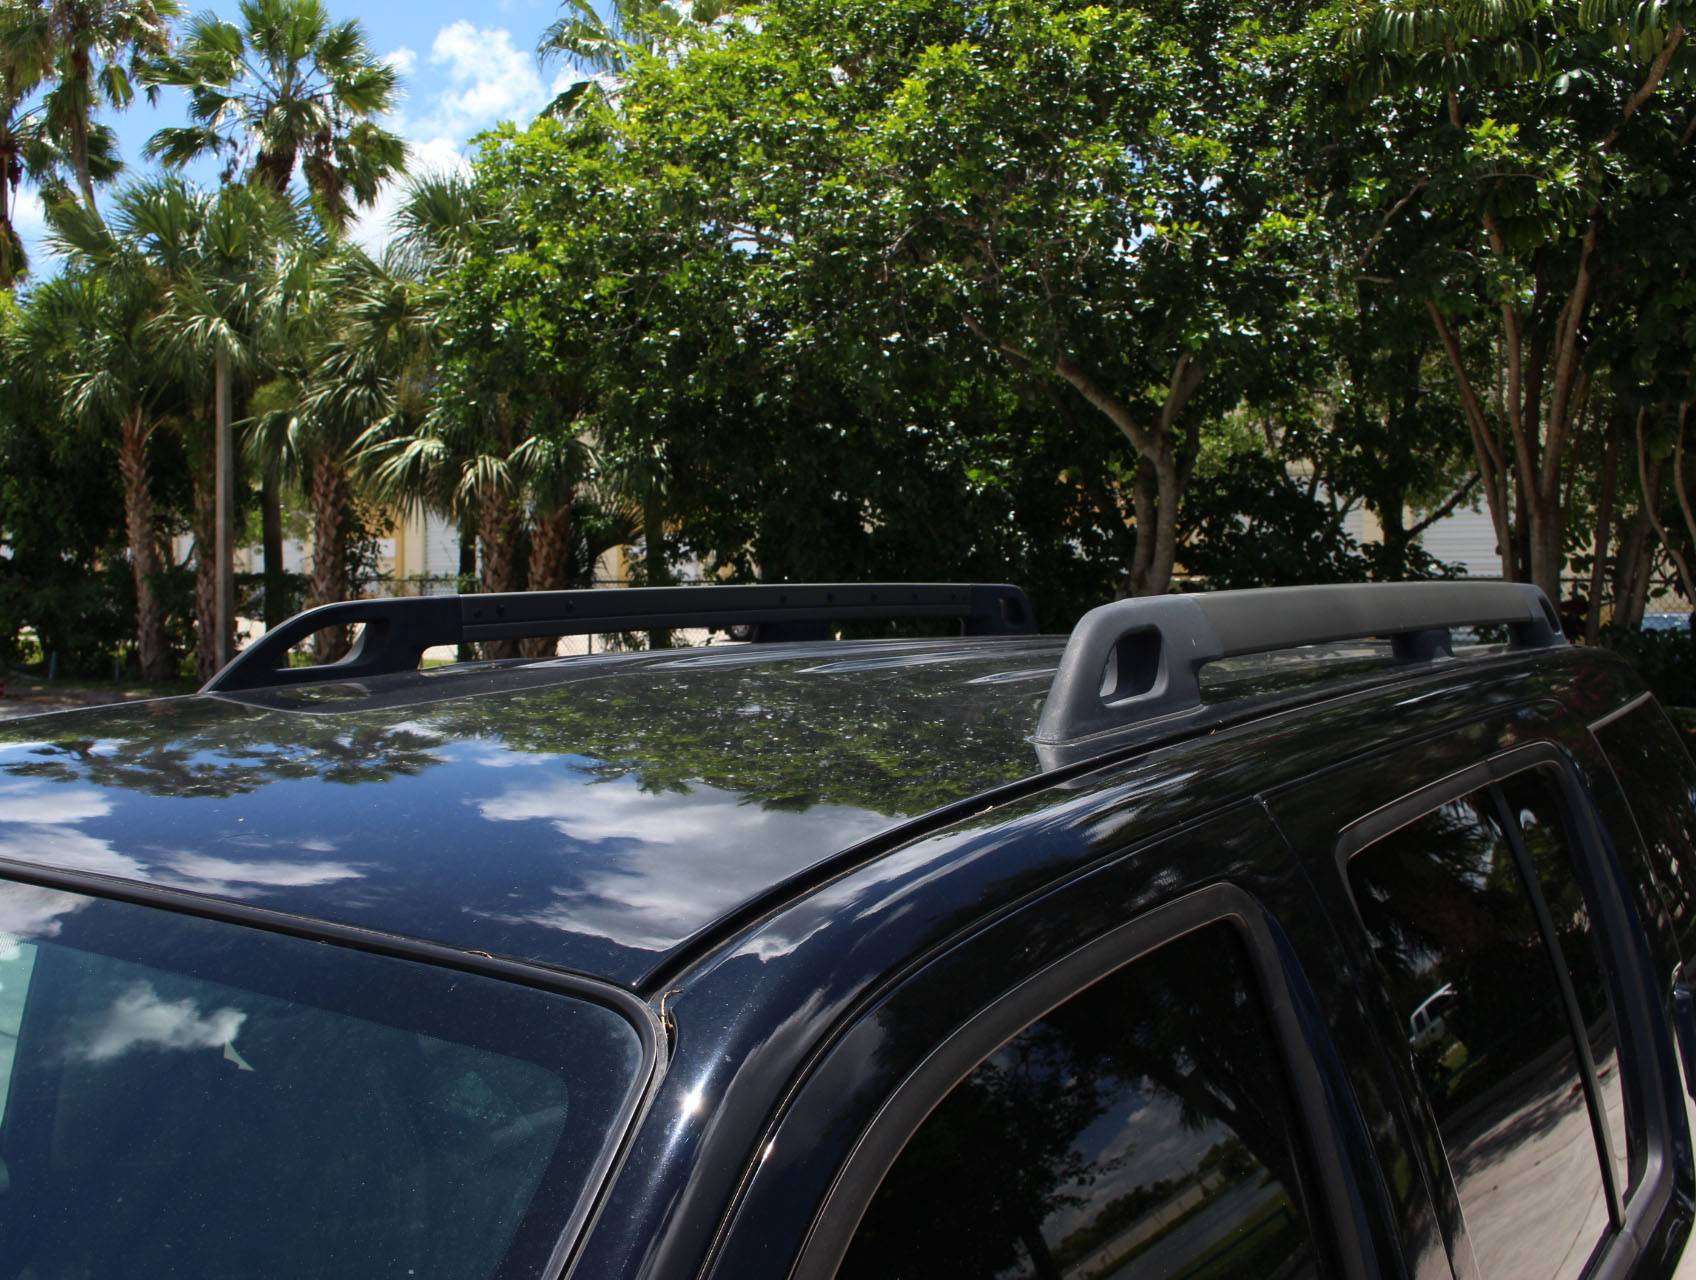 Florida Fine Cars - Used NISSAN PATHFINDER 2012 MIAMI S